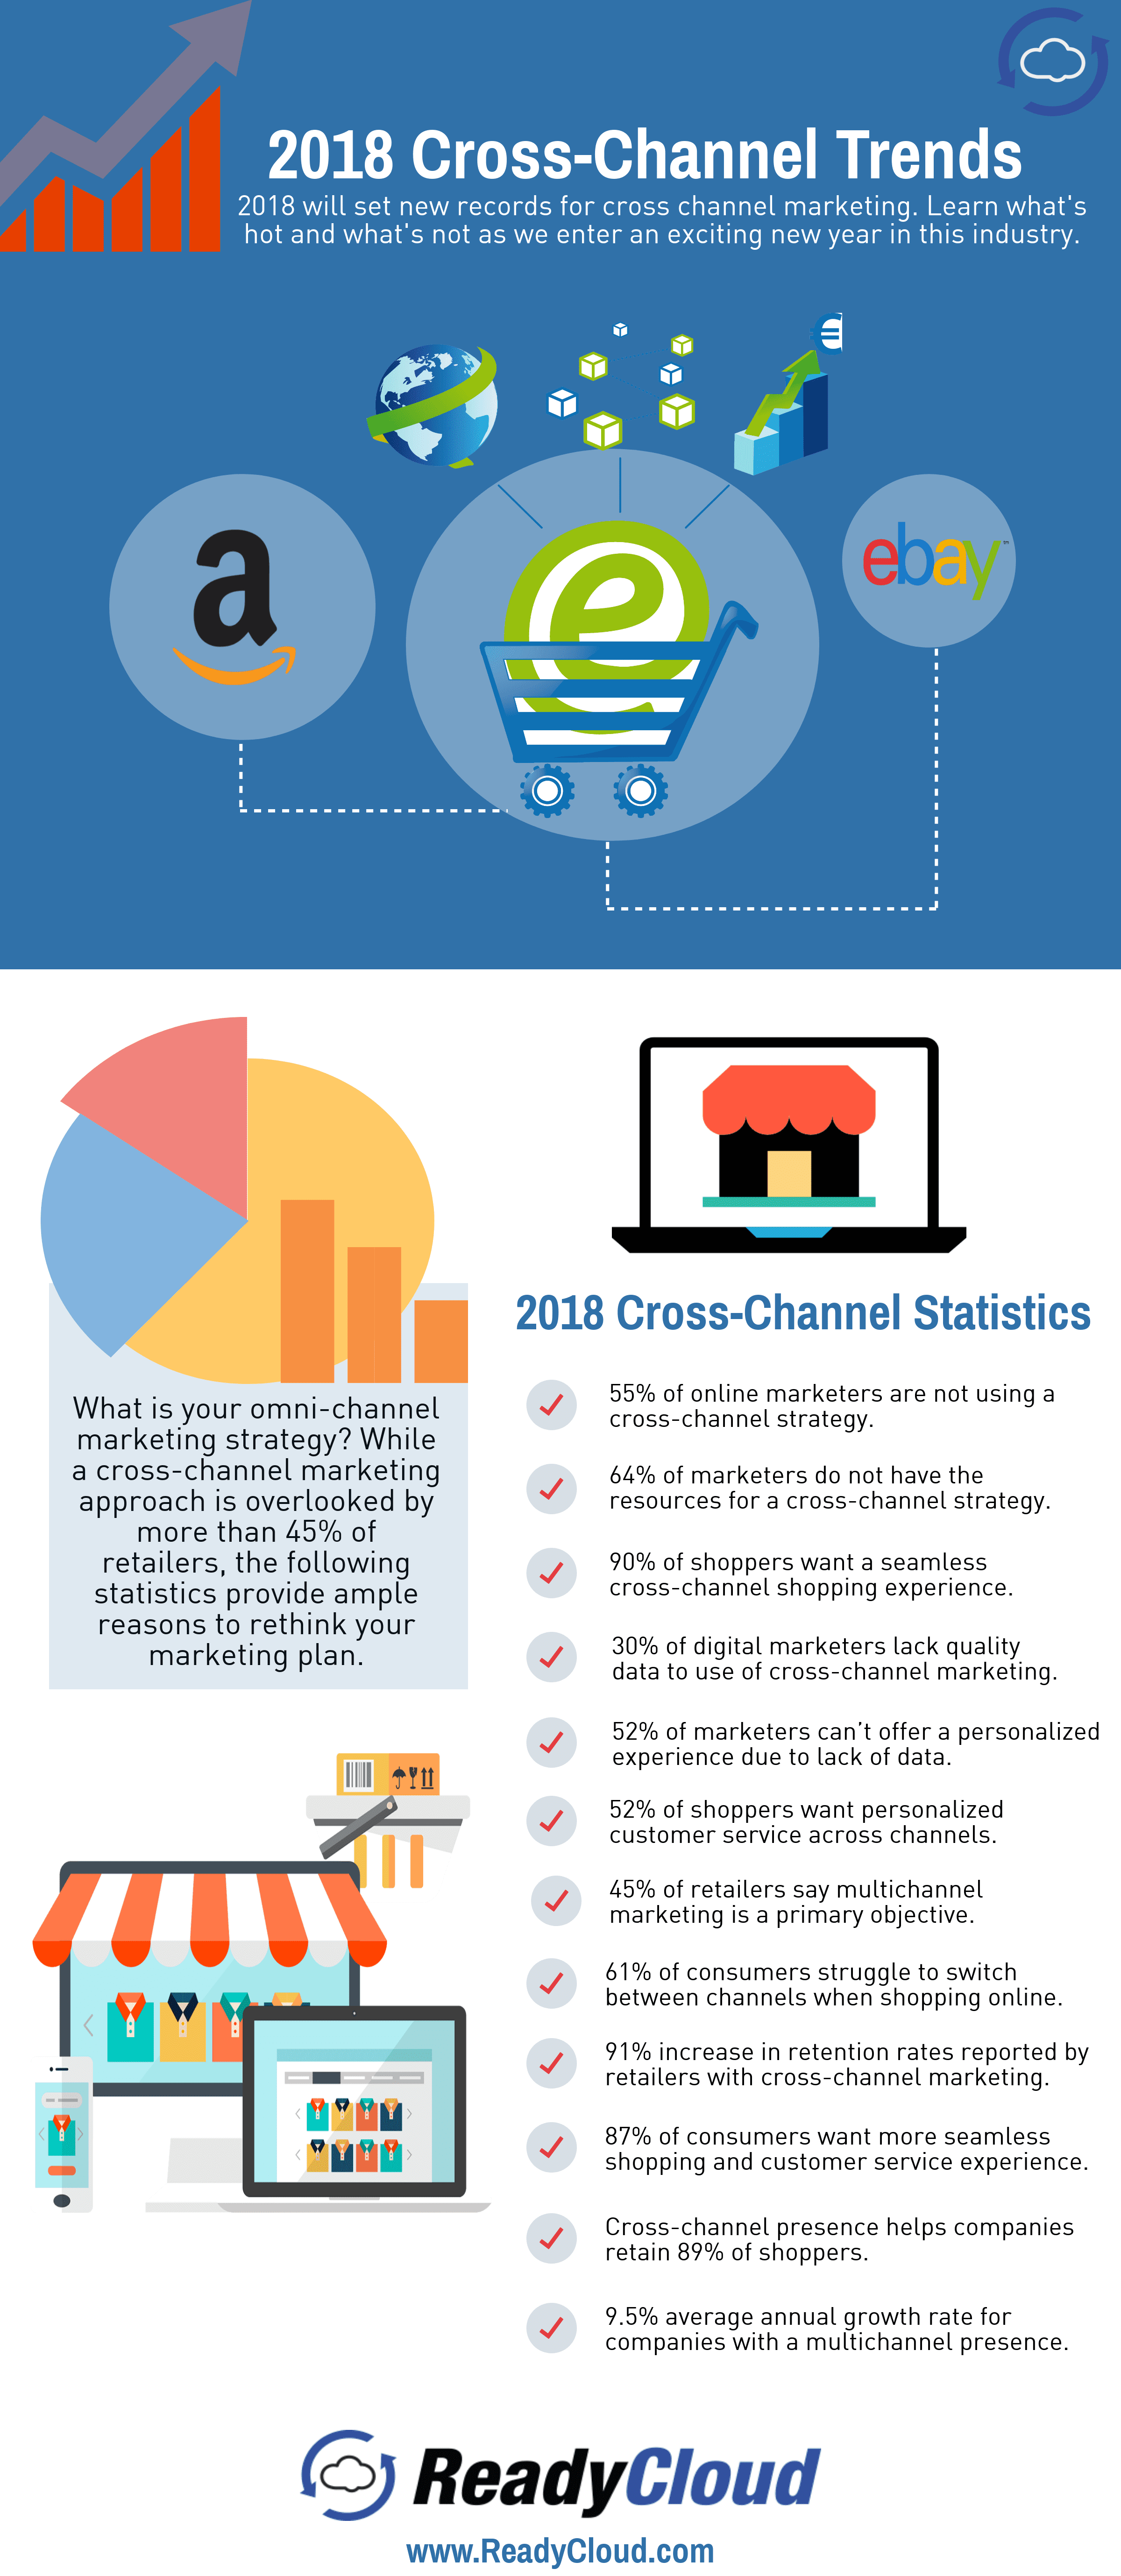 Mobile Commerce Facts for 2018, mobile commerce facts, in 2018, Facts About Mobile Commerce, mobile commerce